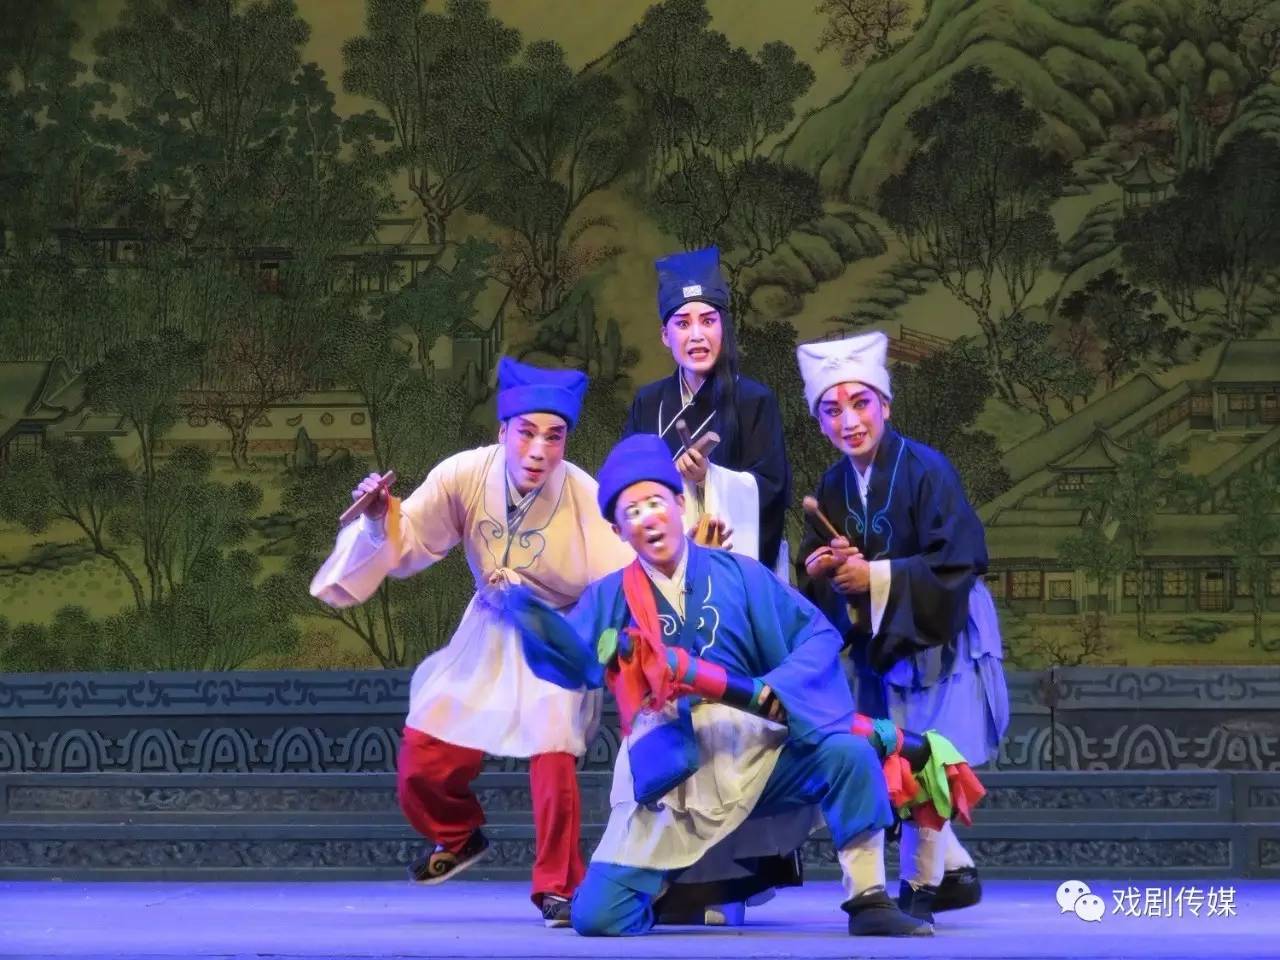 《李亚仙》是华阴市迷胡剧团近年来恢复的一出经典剧目,其中《莲花落